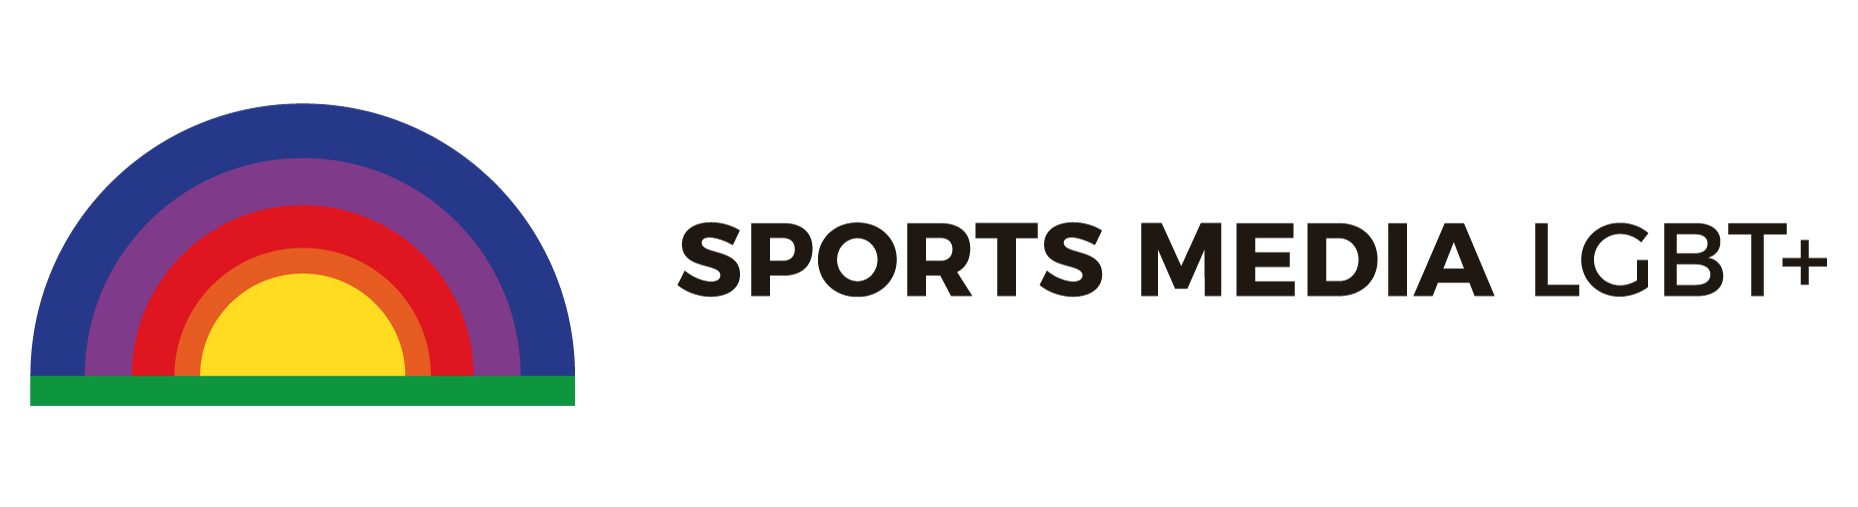 Sports Media LGBT+